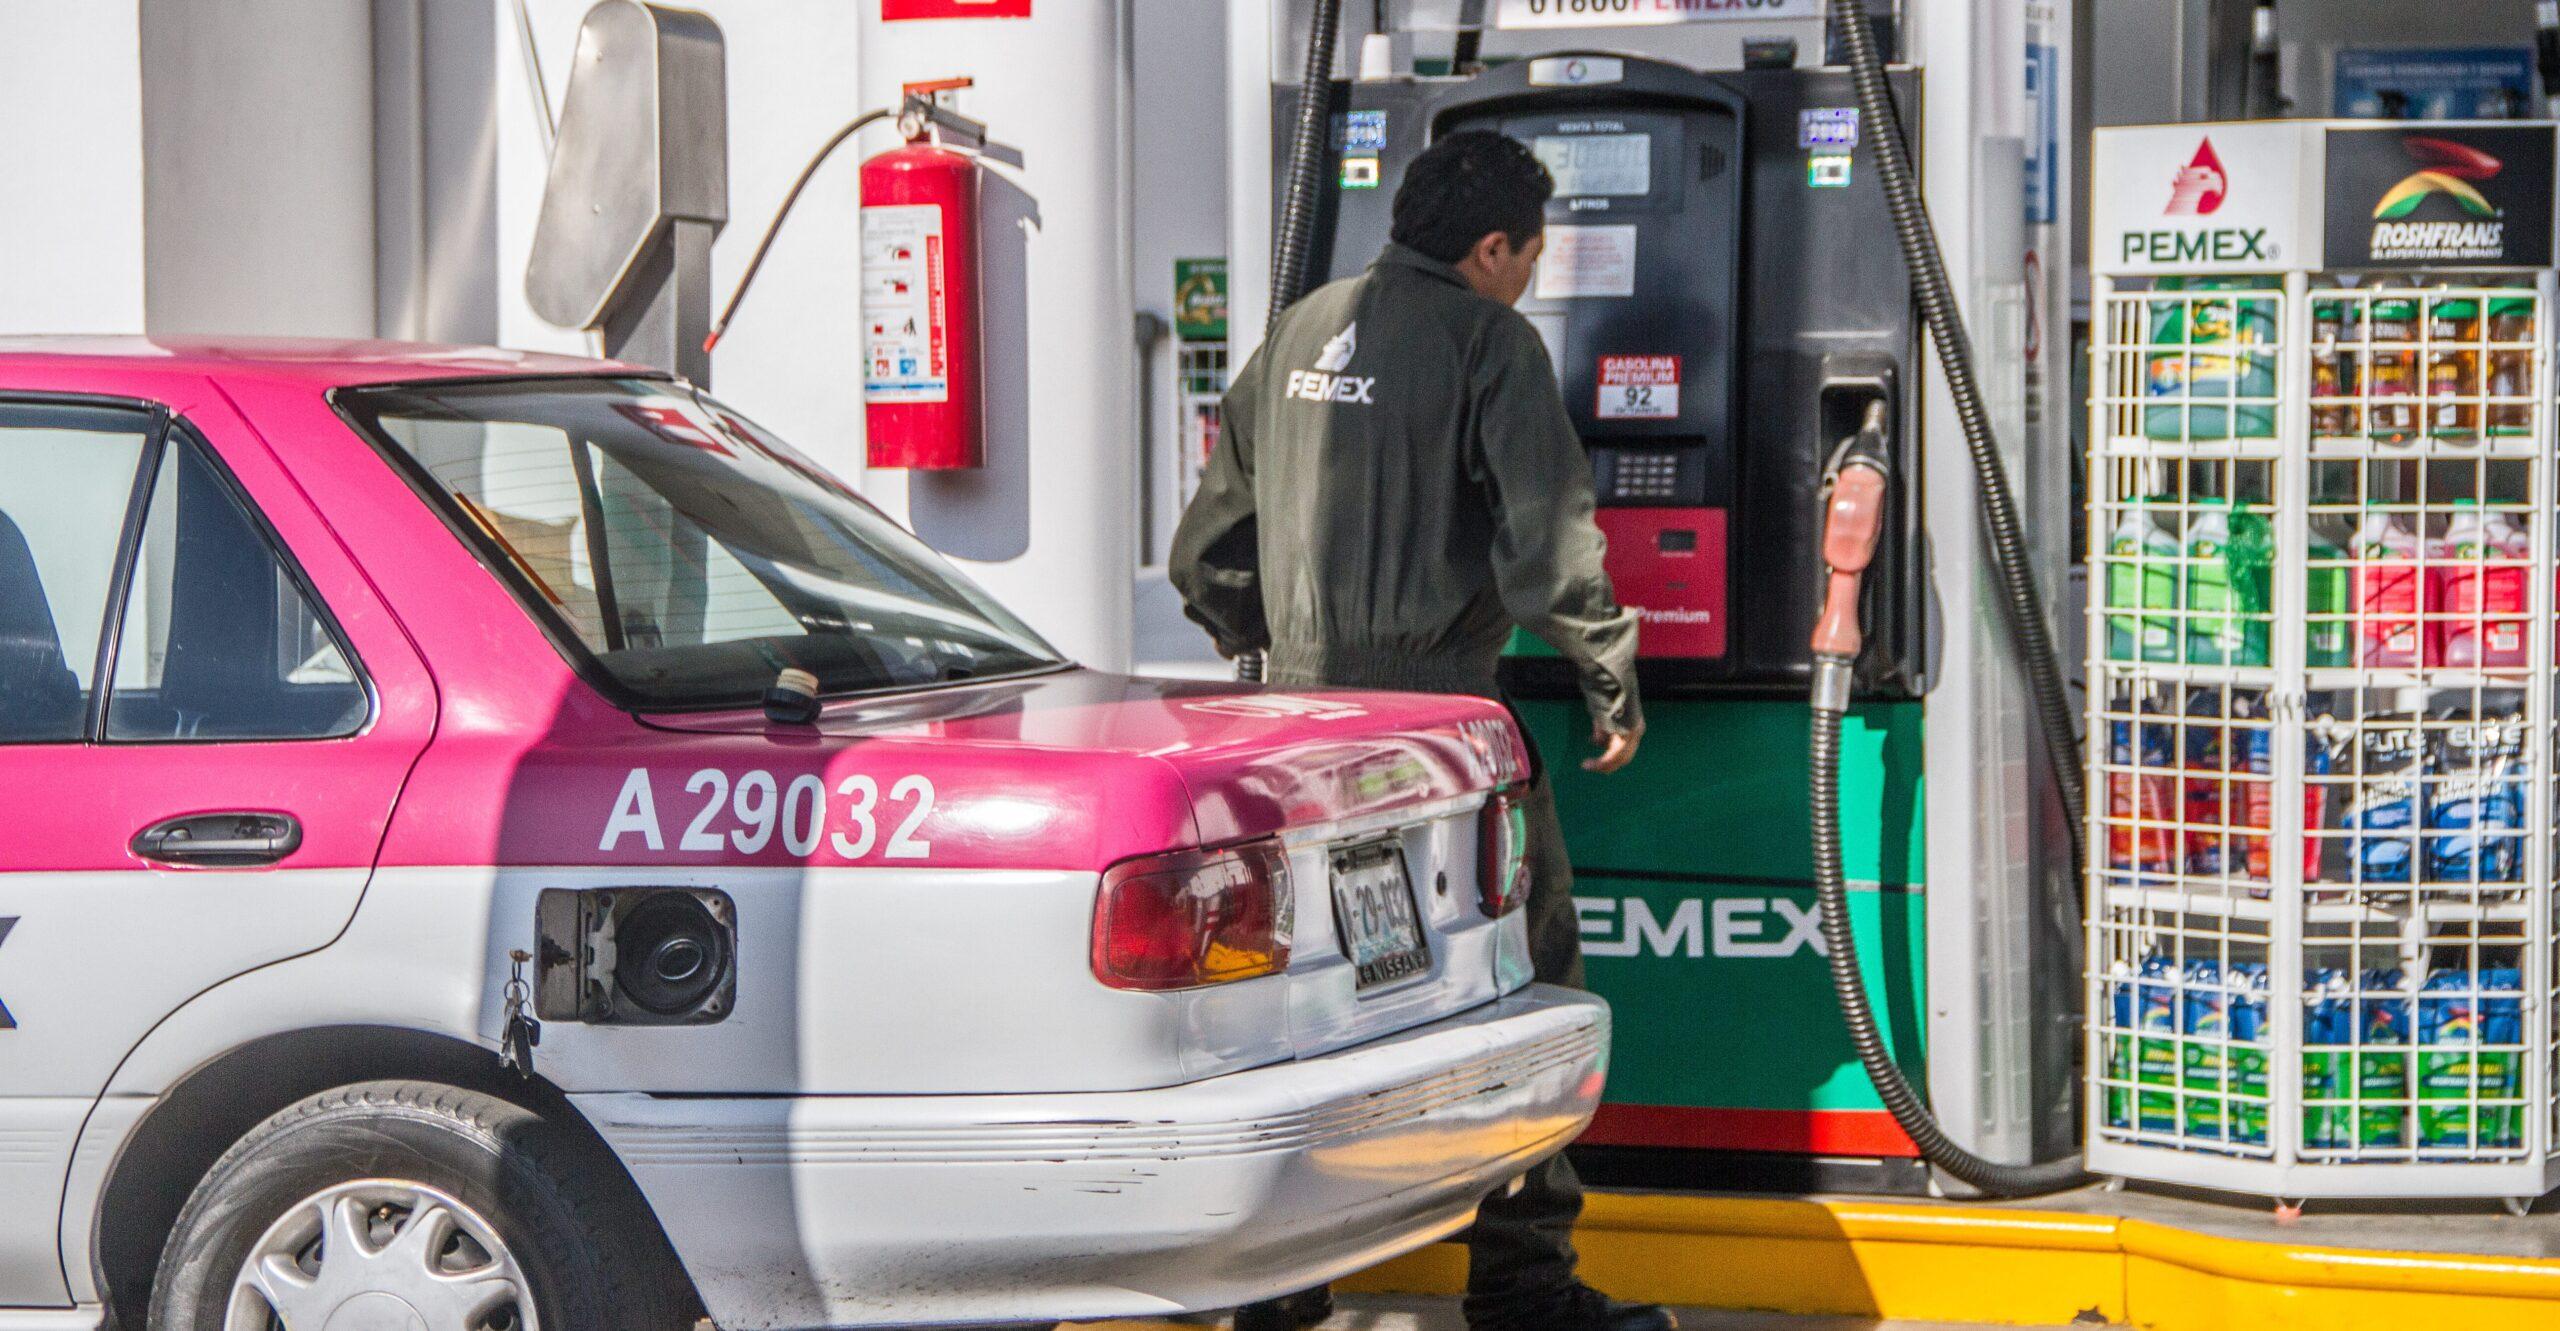 Circula información falsa sobre supuestos motivos de aumento en el precio de la gasolina